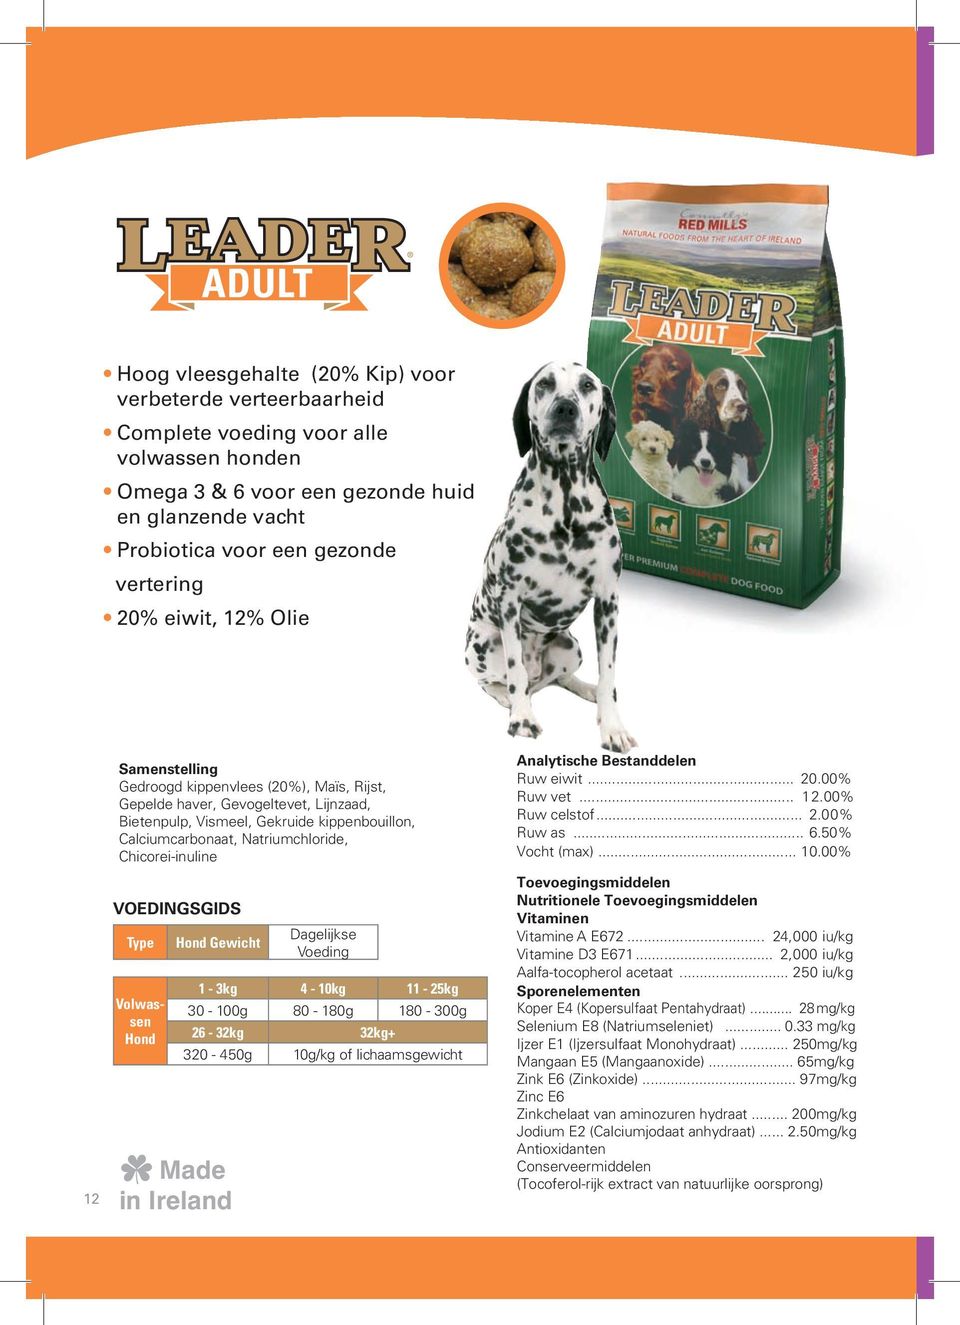 Chicorei-inuline Voedingsgids Type Volwassen Hond Adult Hond Gewicht Dagelijkse Voeding 1-3kg 4-10kg 11-25kg 30-100g 80-180g 180-300g 26-32kg 32kg+ 320-450g 10g/kg of lichaamsgewicht Analytische